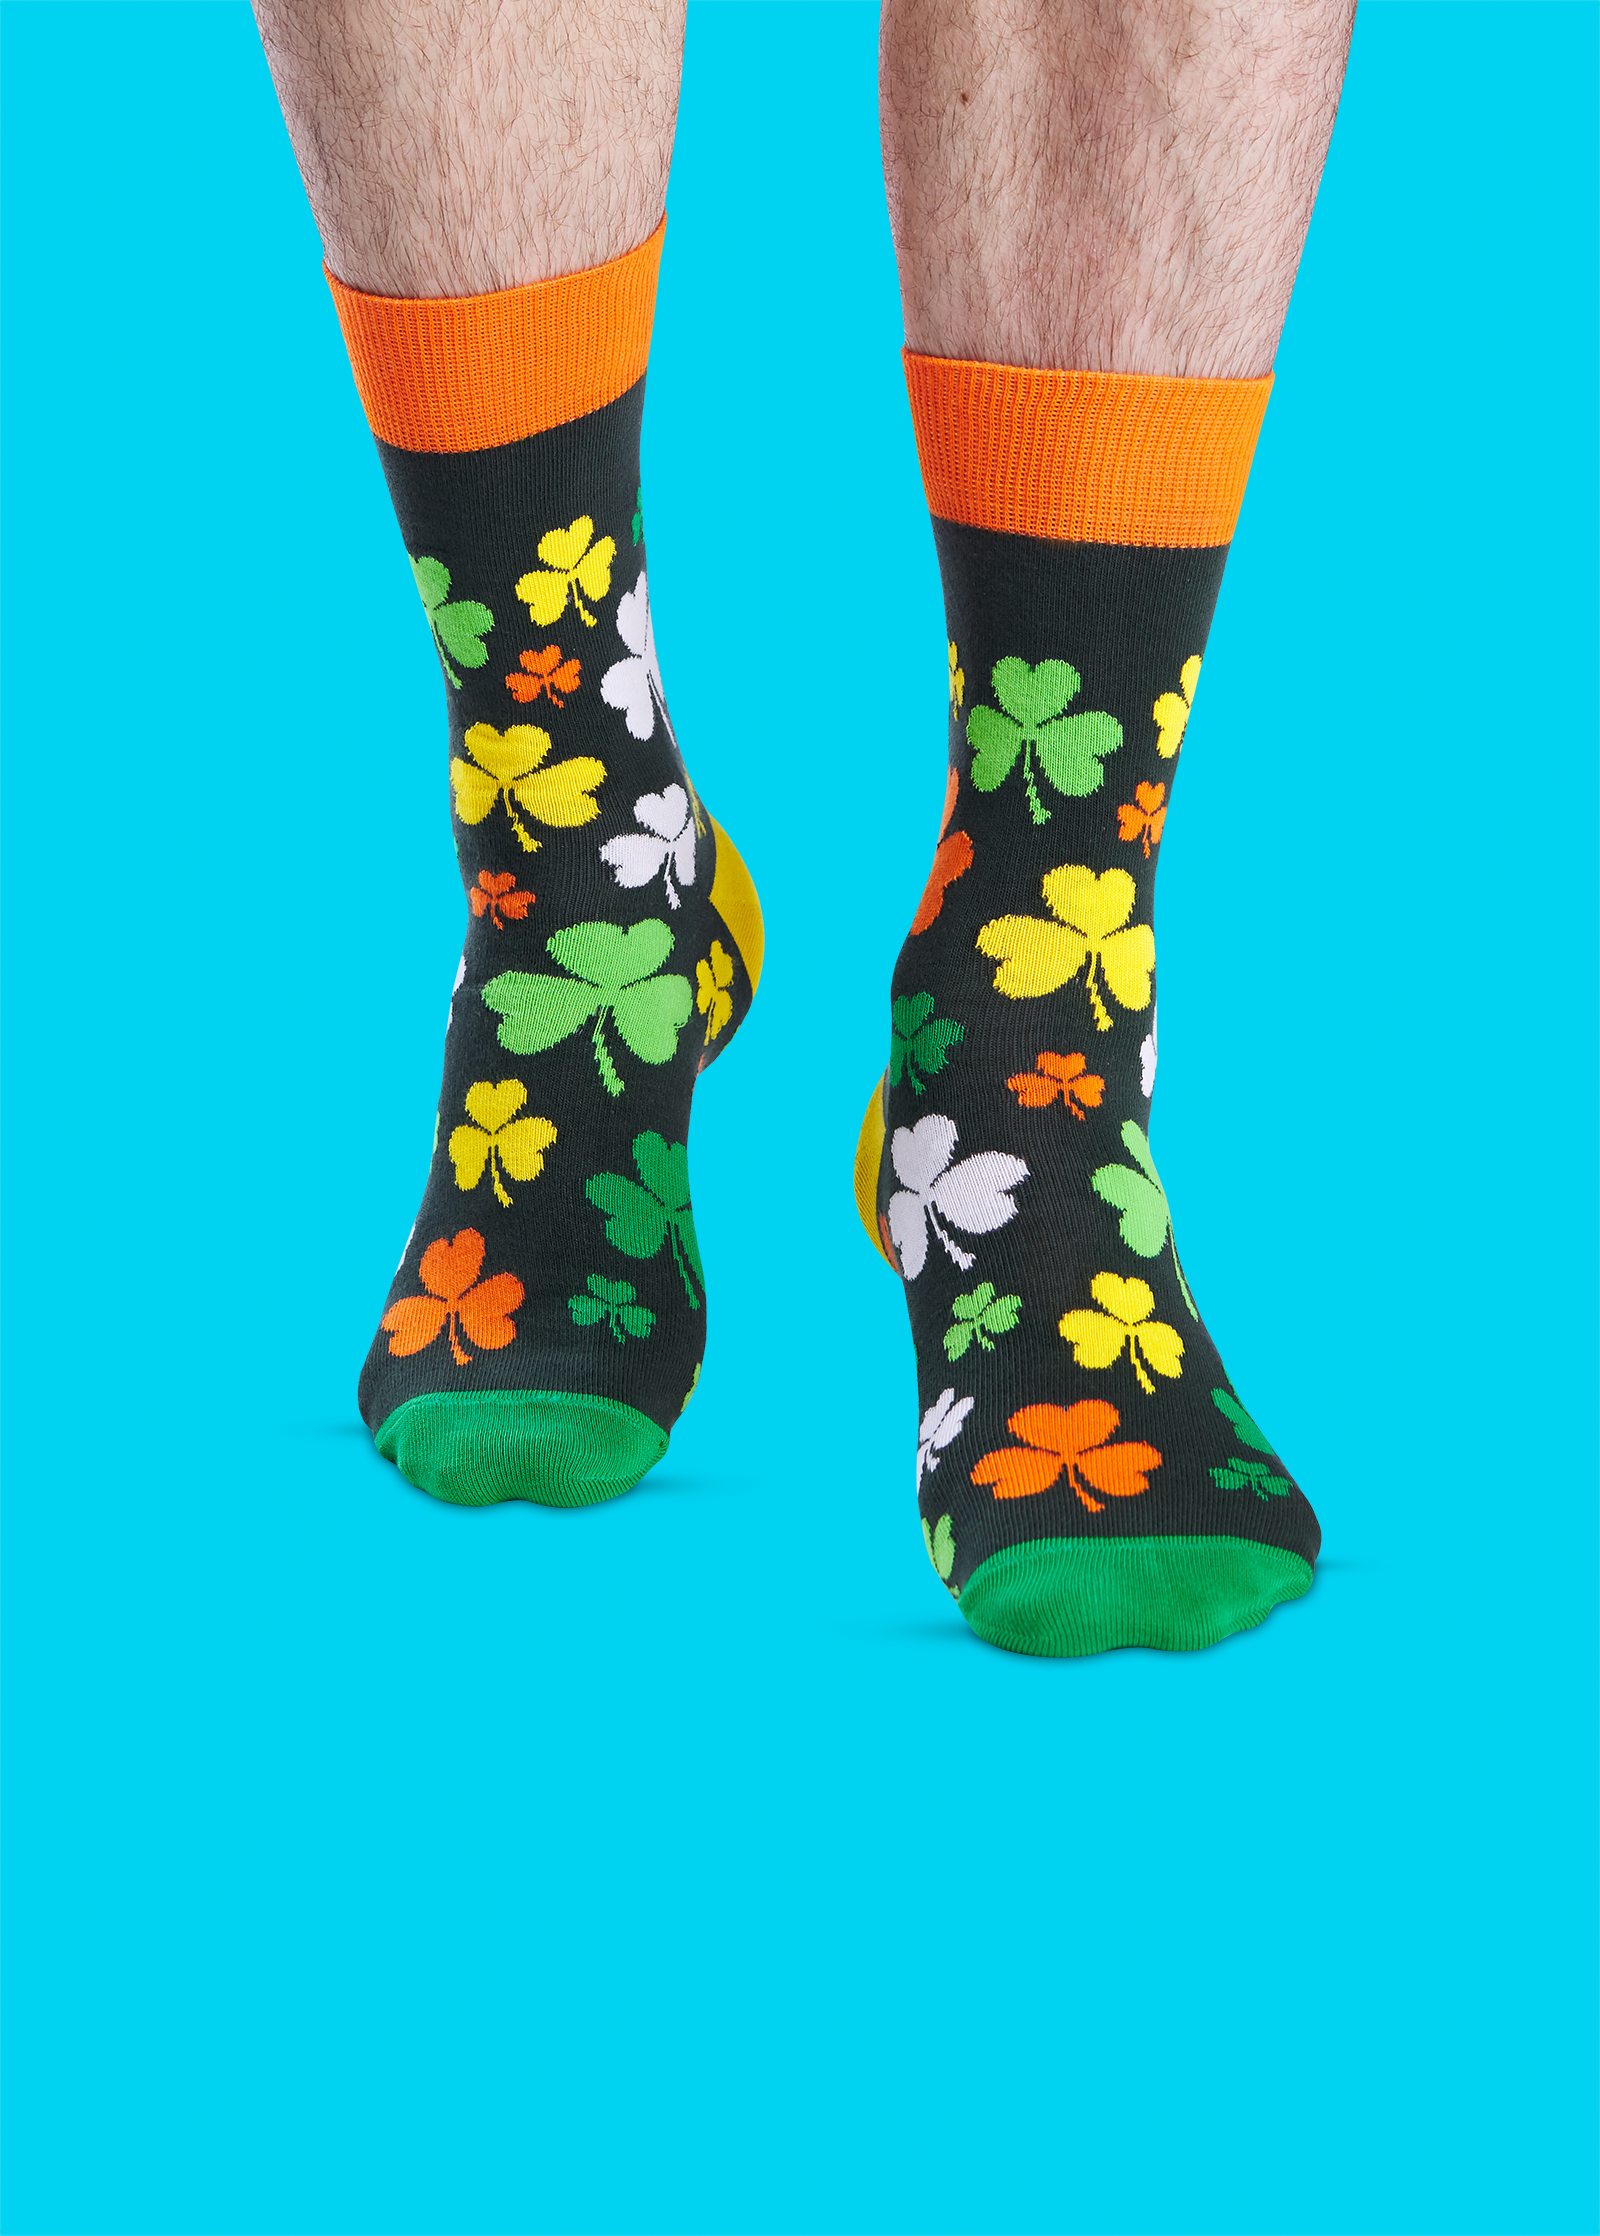 Носки мужские Хэппи Сокс зеленые. Носки Irish, Marrey. Разноцветные носки. Необычные носки.